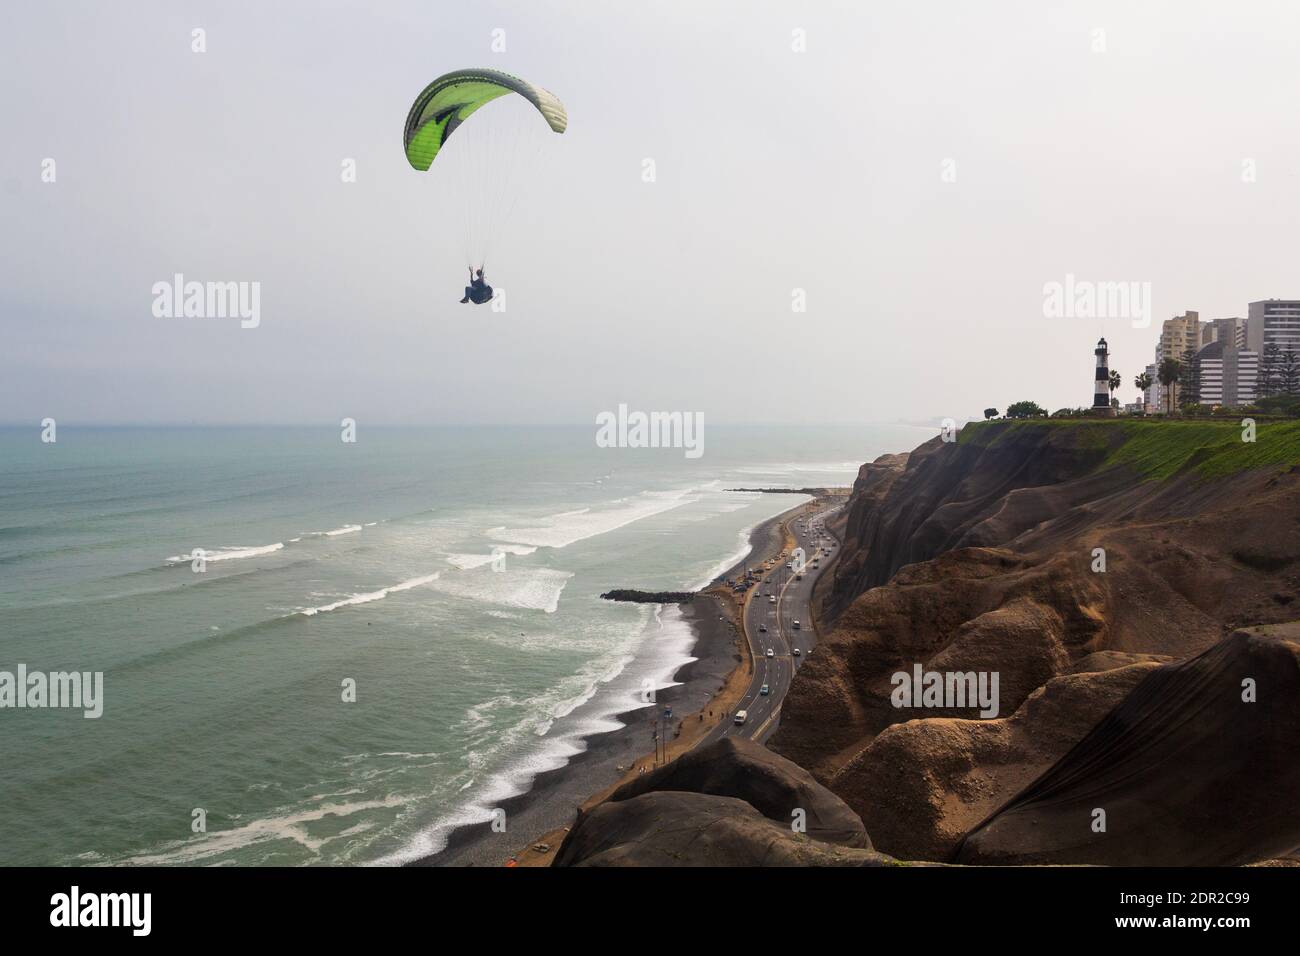 Lima, Pérou - 19 juin 2015 : les parapentes naviguent au-dessus de l'océan Pacifique au large des falaises de Miraflores près du phare de la Marina. Banque D'Images